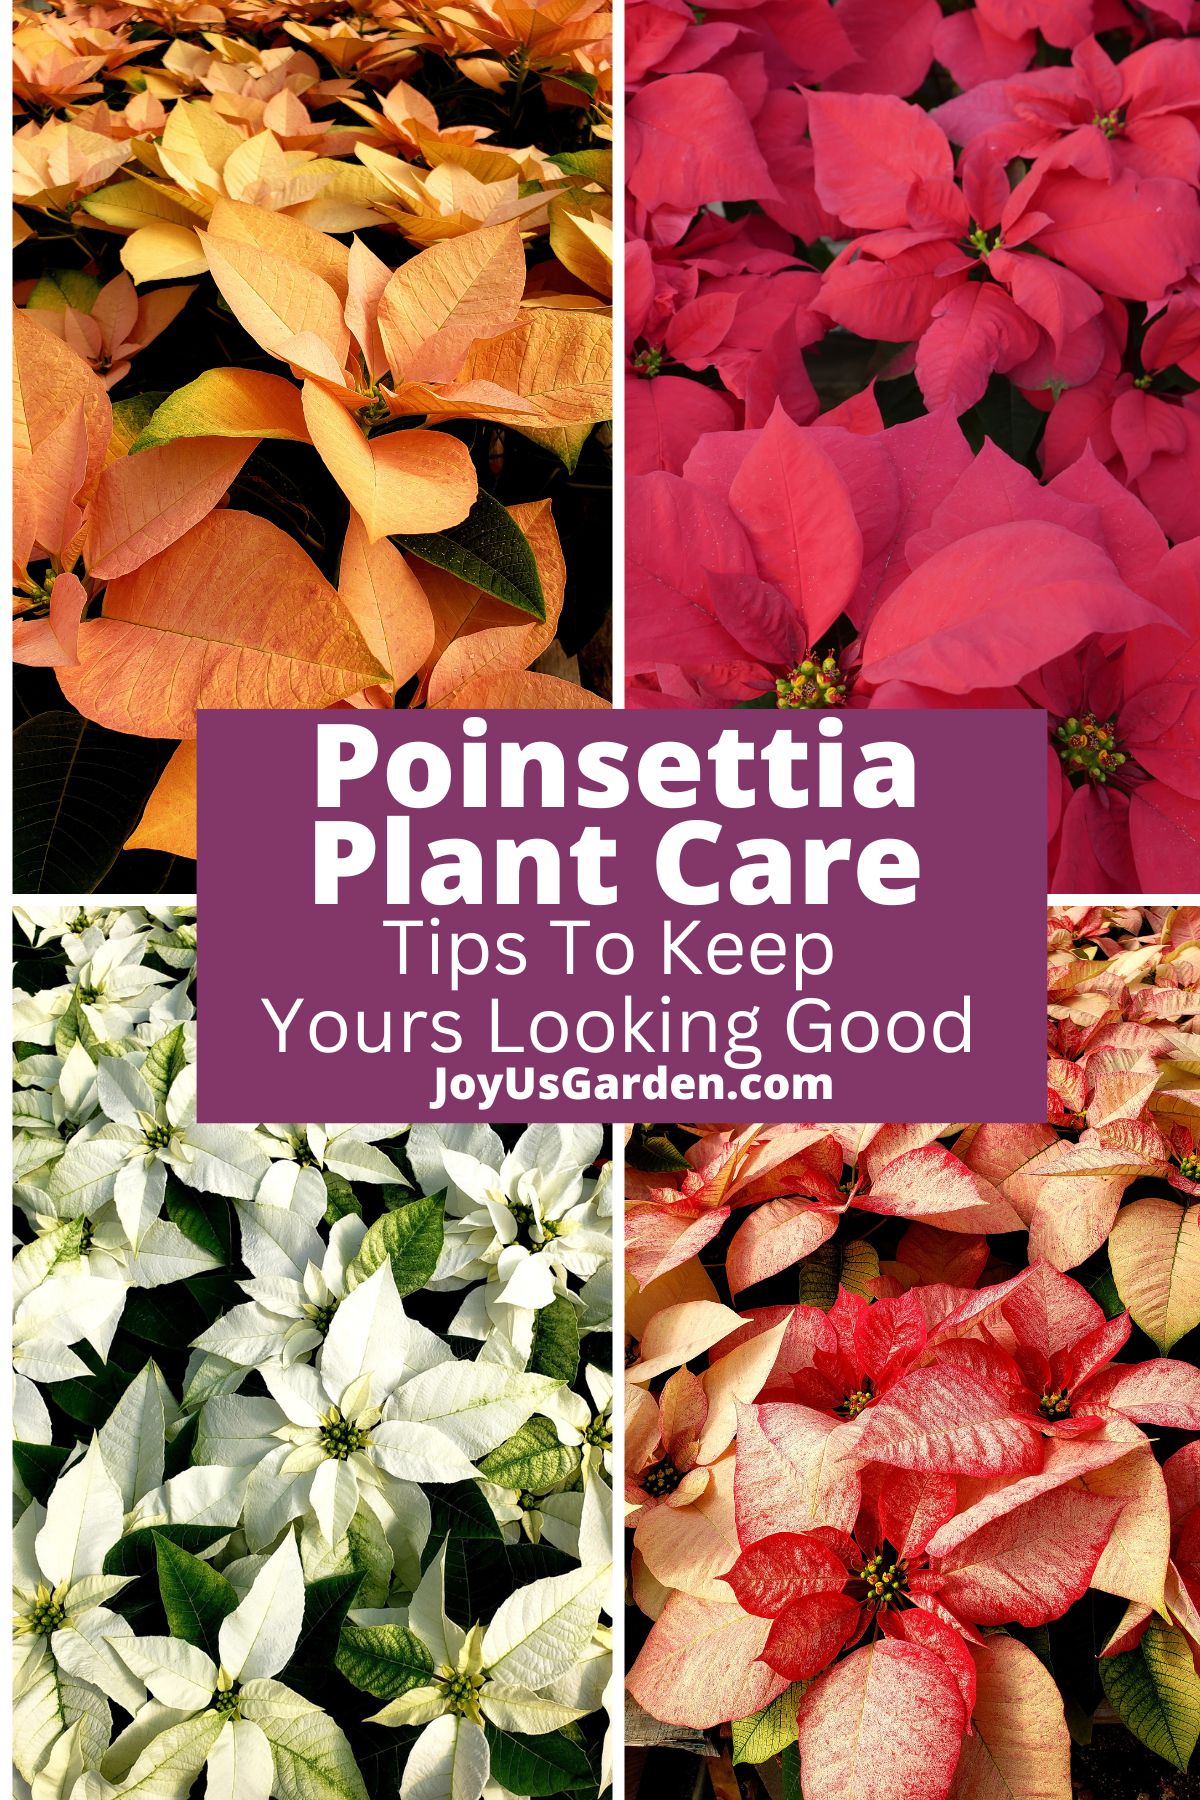  Poinsettia Plant Care: Konsiletoj por Bonigi Vian Aspekton